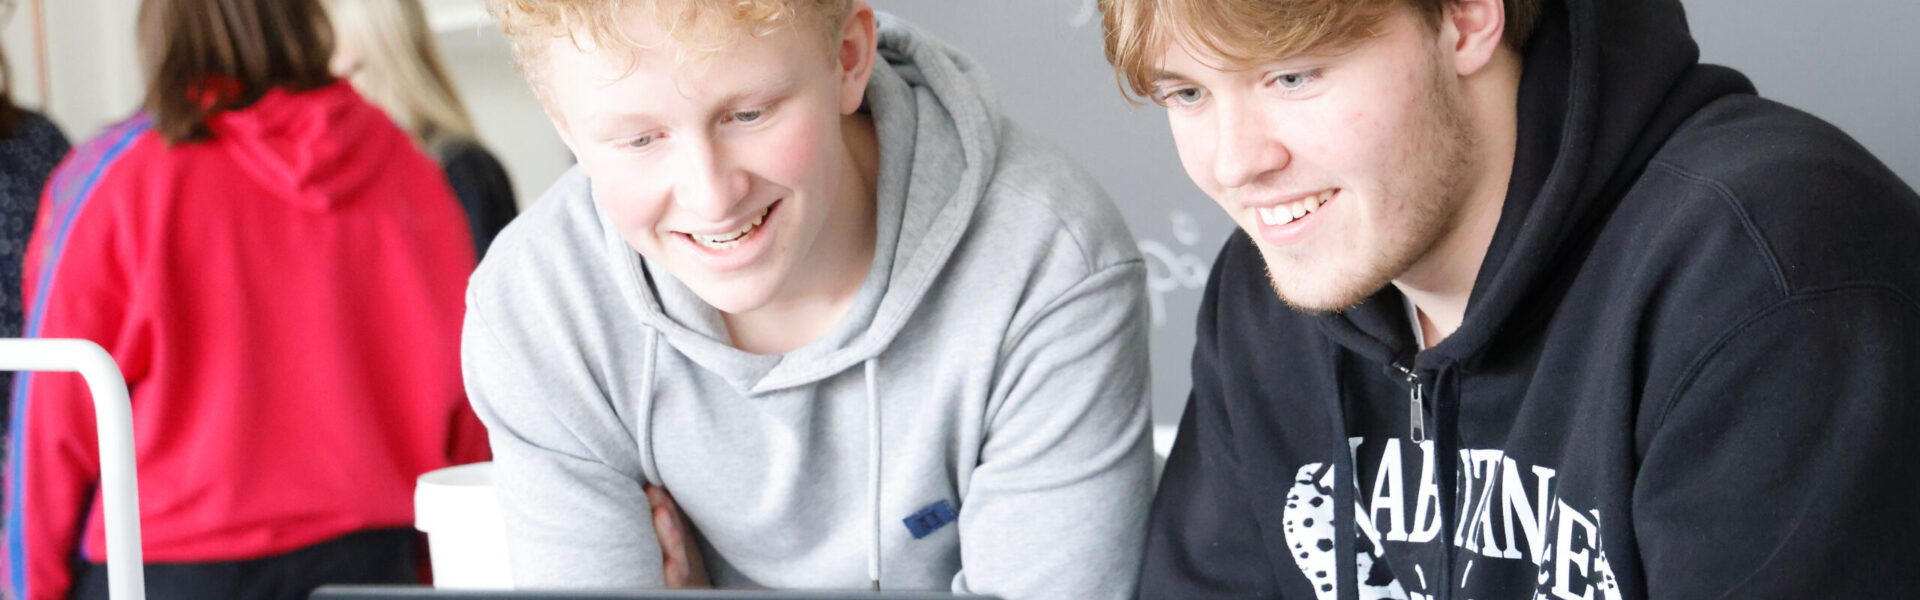 To drenge sidder i klasselokale og kigger på en computer